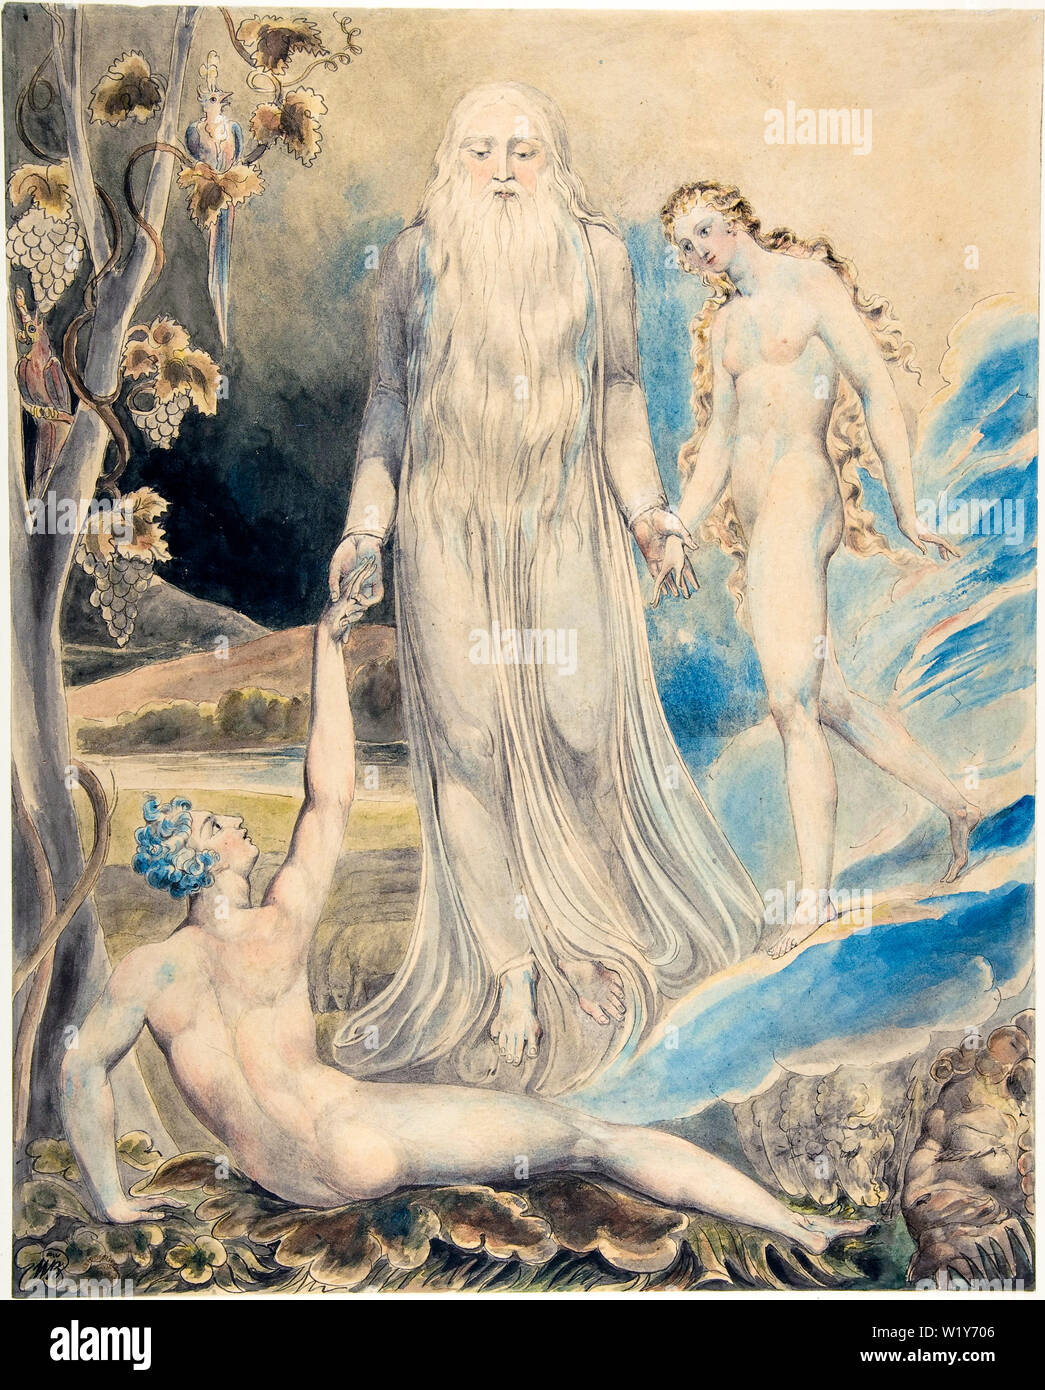 William Blake, Adam et Eve, Ange de la présence Divine apportant Eve à Adam, la création d'Eve, peinture aquarelle sur stylo et encre, vers 1803-1805 Banque D'Images